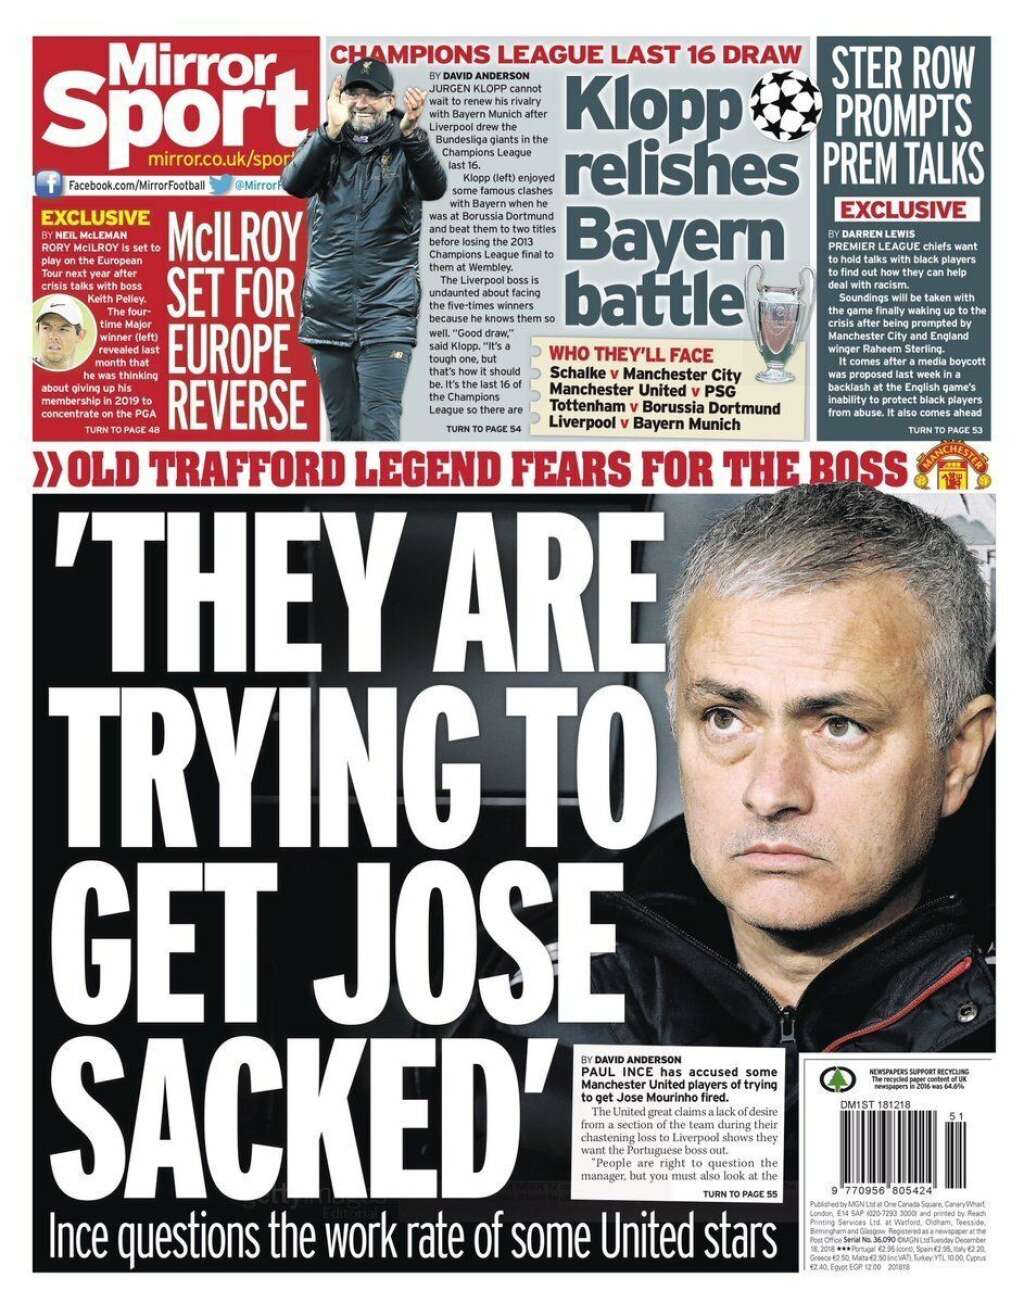 18 décembre - "Daily Mirror" - Au lendemain du tirage au sort, le <em>Daily Mirror</em> mettait en Une l'interview d'un ancien joueur de MU affirmant que les joueurs actuels cherchaient avant tout à faire renvoyer leur entraîneur d'alors, José Mourinho. Ambiance.